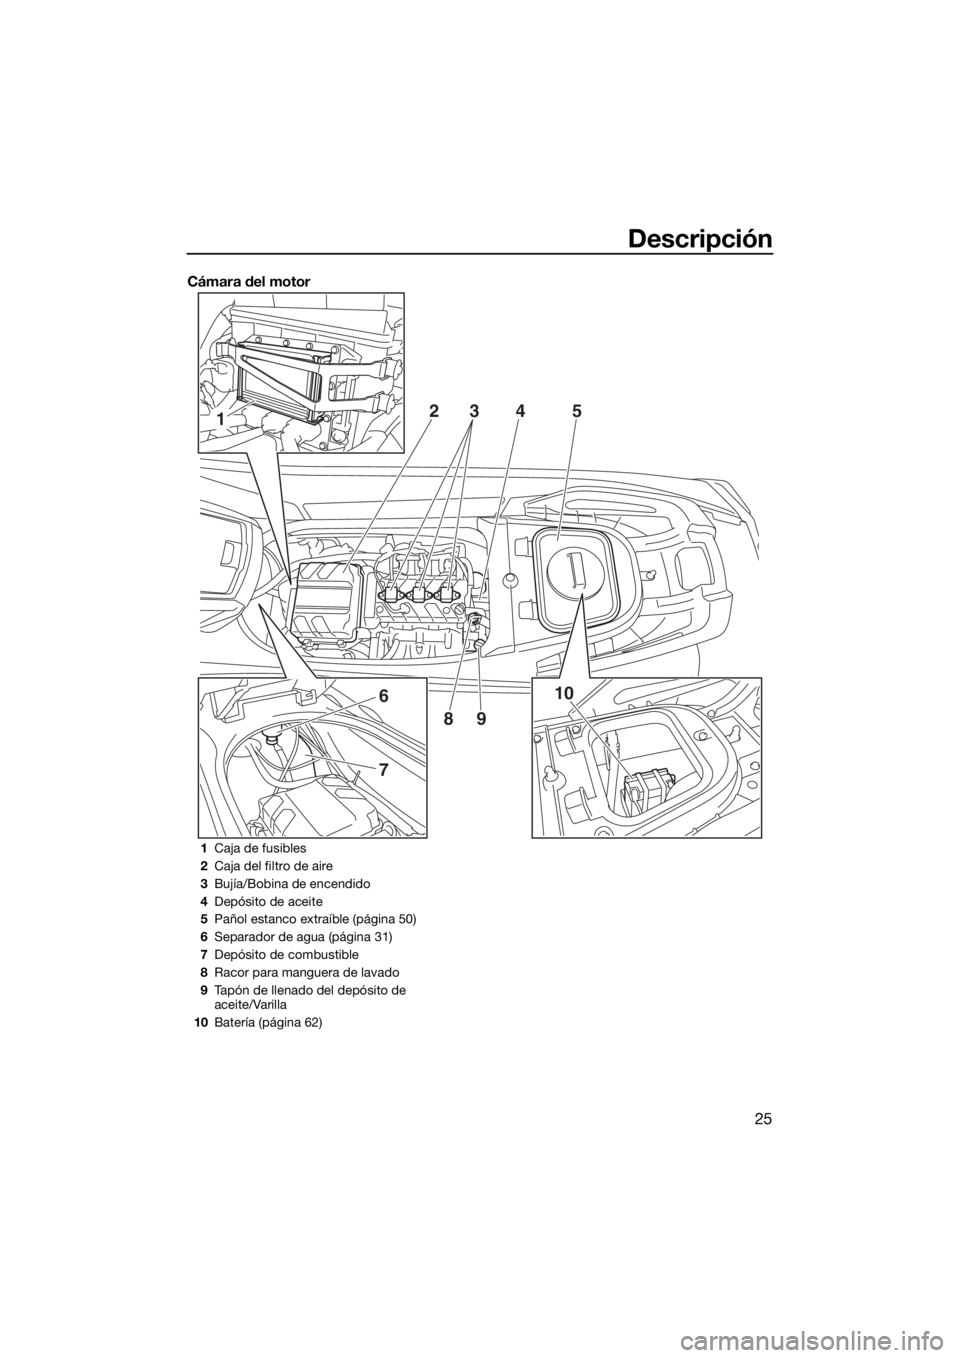 YAMAHA VX LIMITED 2016  Manuale de Empleo (in Spanish) Descripción
25
Cámara del motor
1
6
7
10 2
345
89
1Caja de fusibles
2Caja del filtro de aire
3Bujía/Bobina de encendido
4Depósito de aceite
5Pañol estanco extraíble (página 50)
6Separador de ag